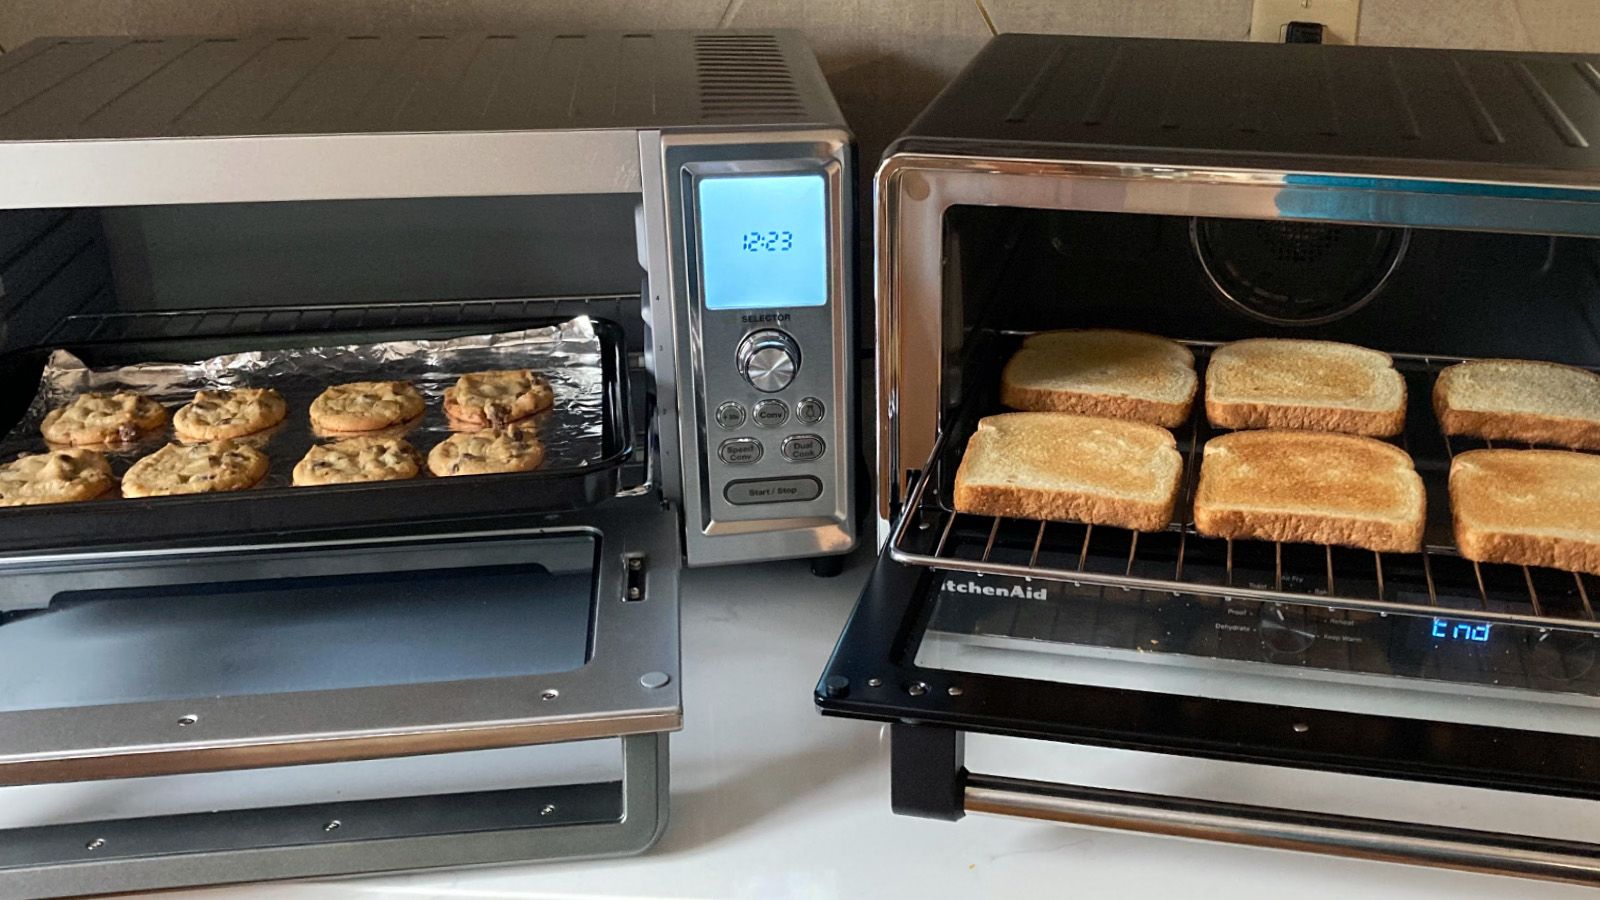 wetgeving Vrijgekomen Aanvankelijk Best toaster oven in 2023, tried and tested | CNN Underscored